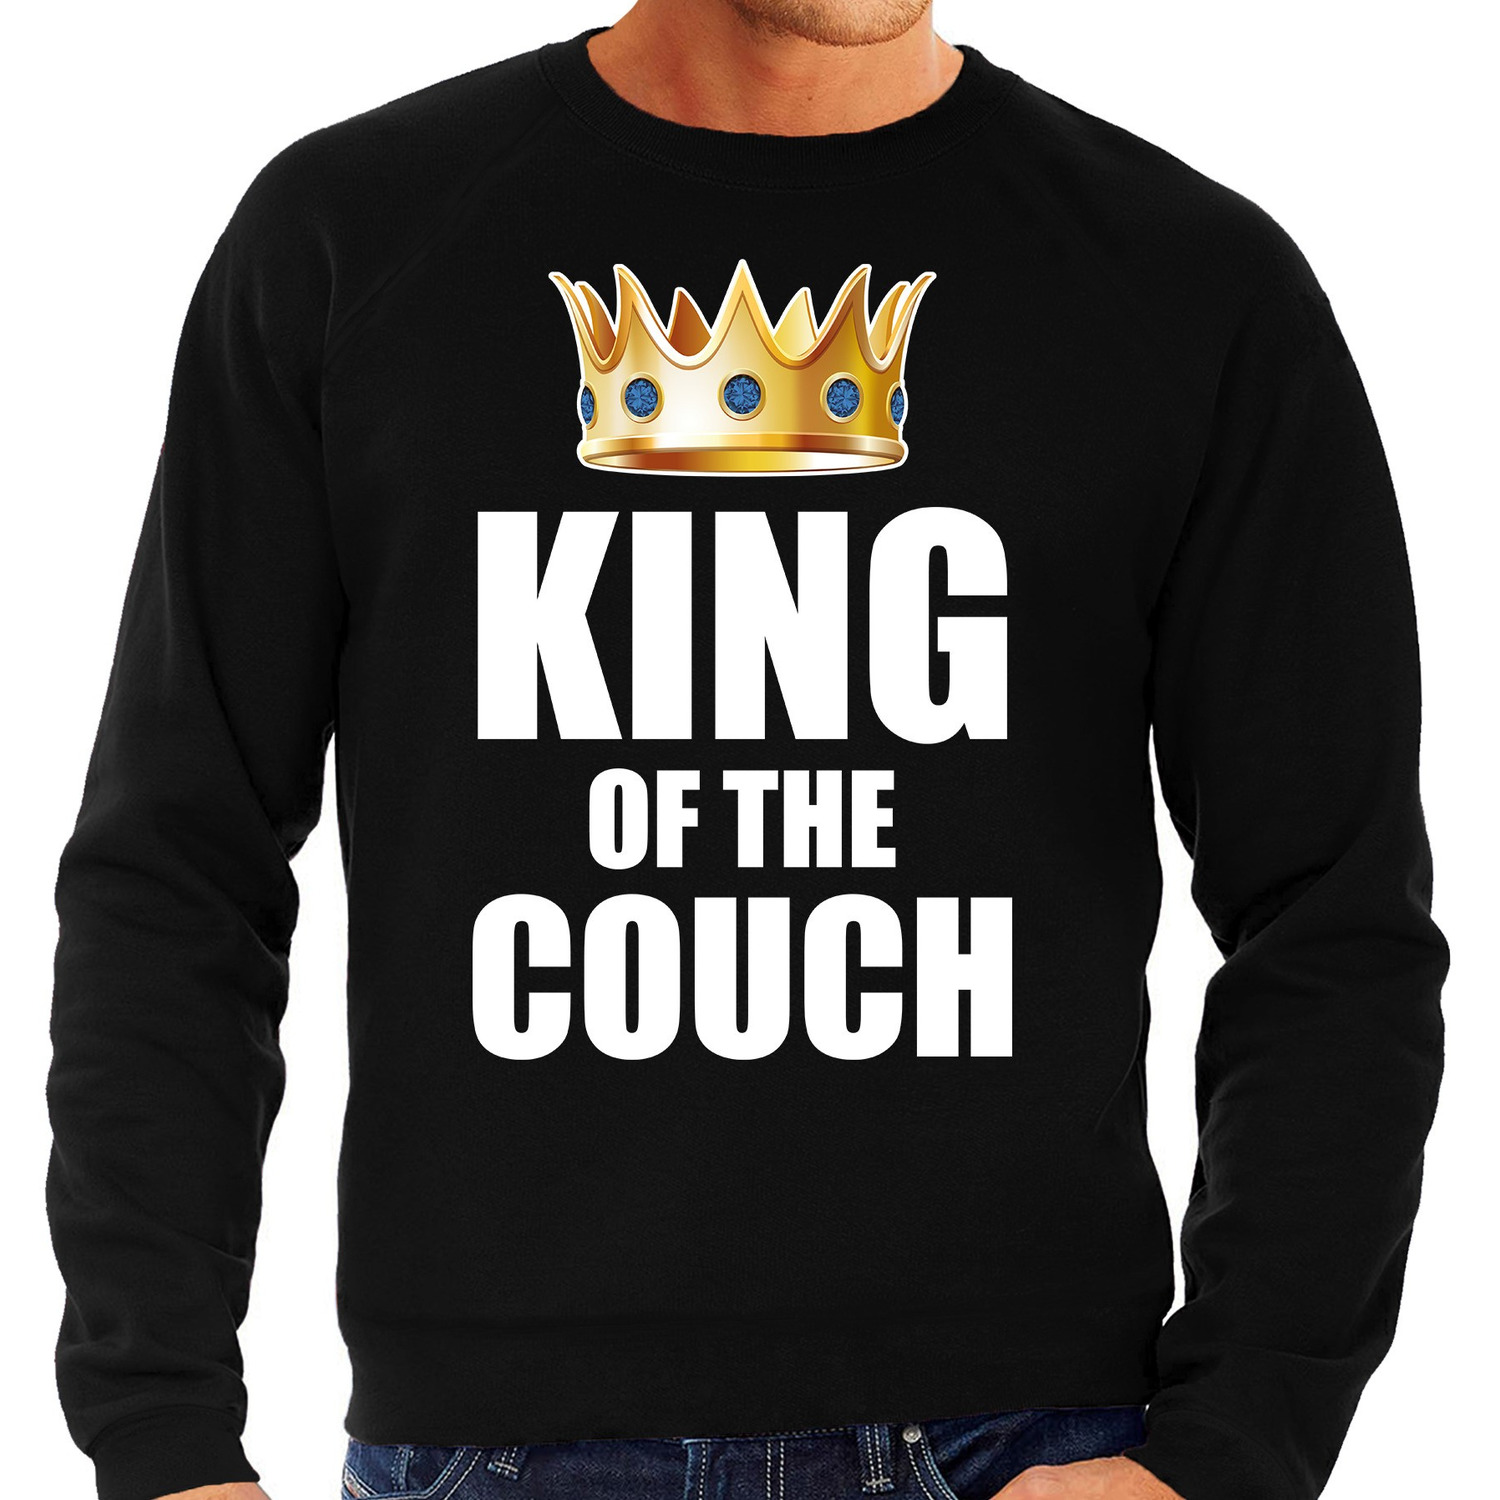 King of the couch sweater / trui voor thuisblijvers tijdens Koningsdag zwart heren